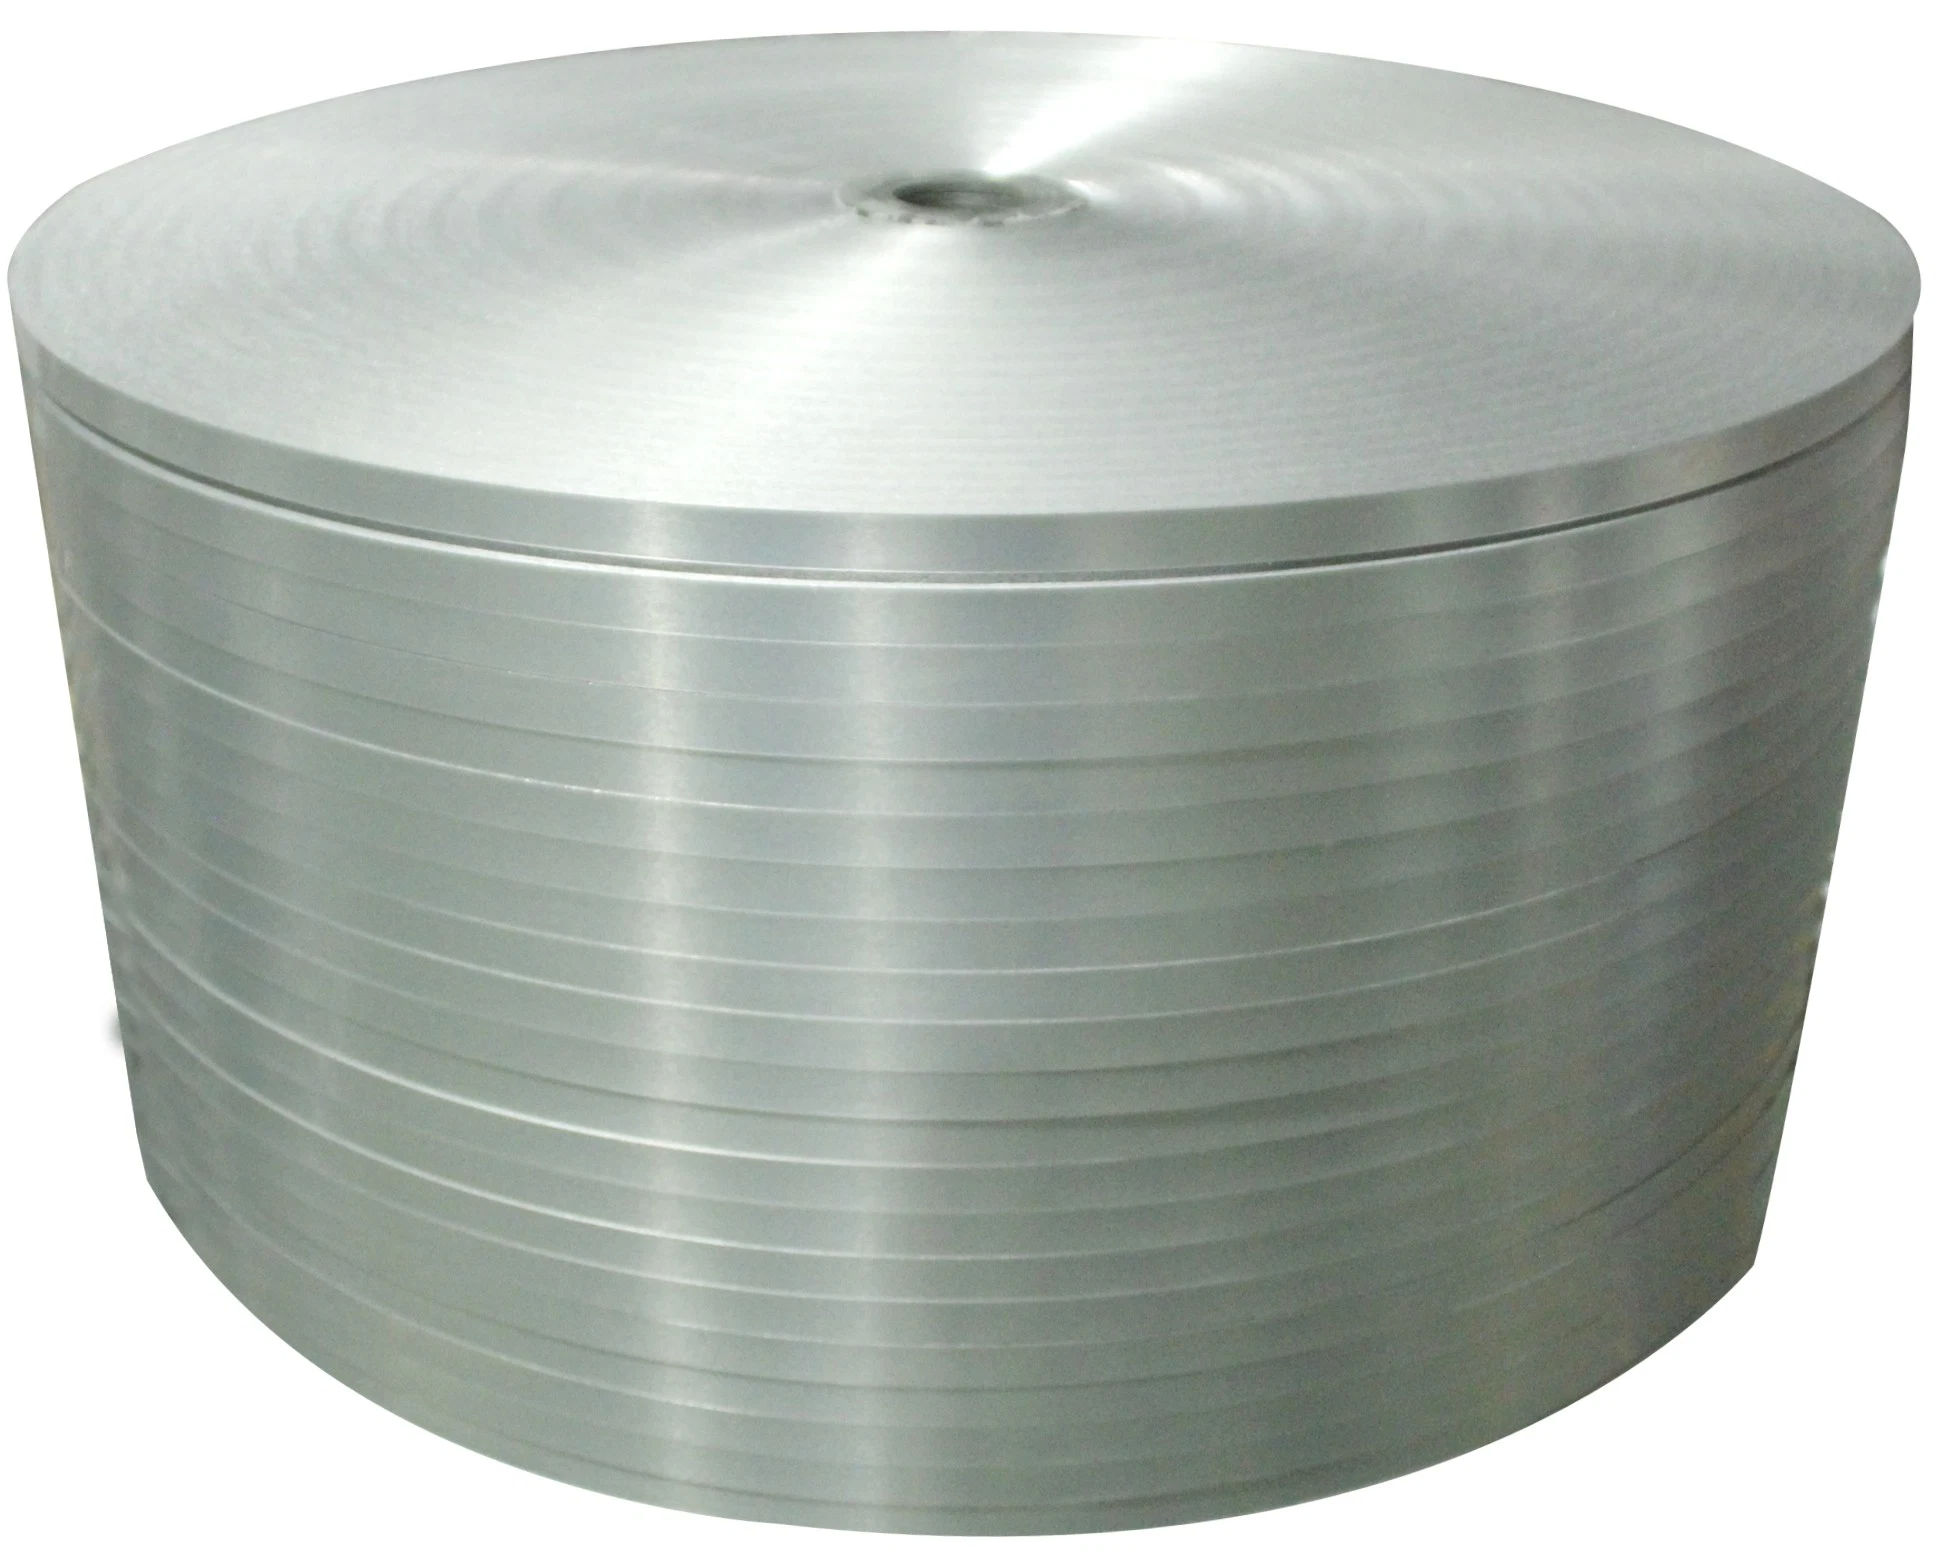 Ruban adhésif en aluminium revêtu de copolymère en vente chaude pour câble.